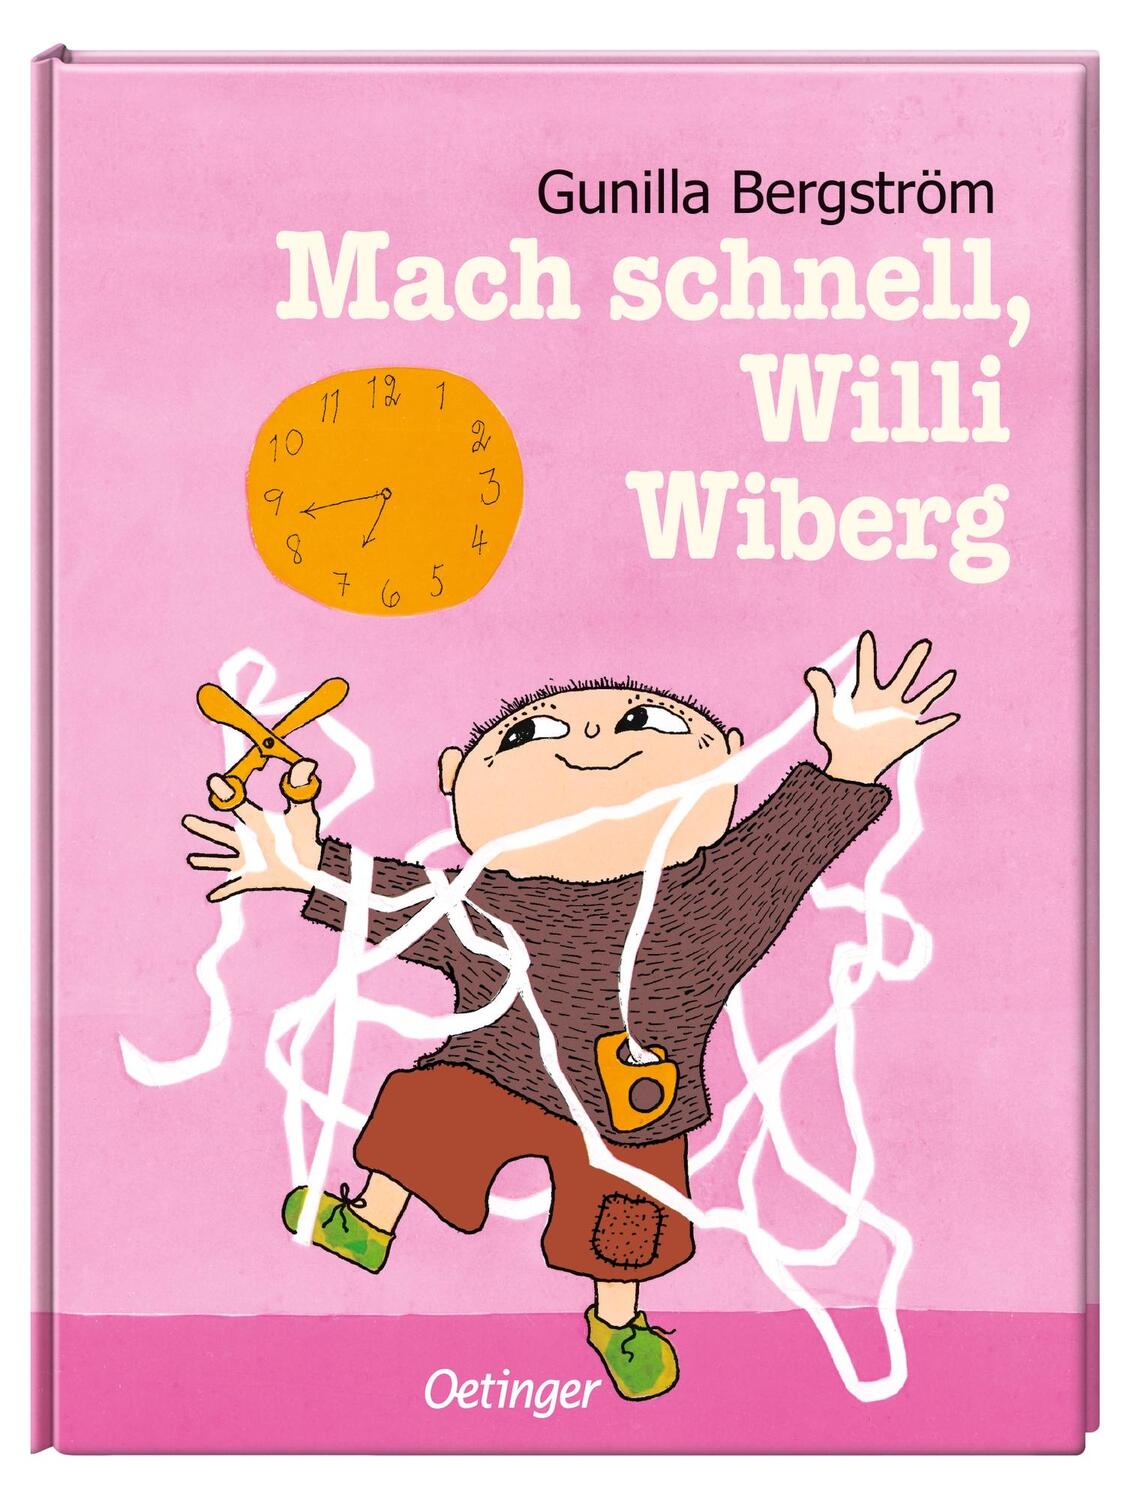 Bild: 9783789177545 | Mach schnell, Willi Wiberg | Gunilla Bergström | Buch | Willi Wiberg